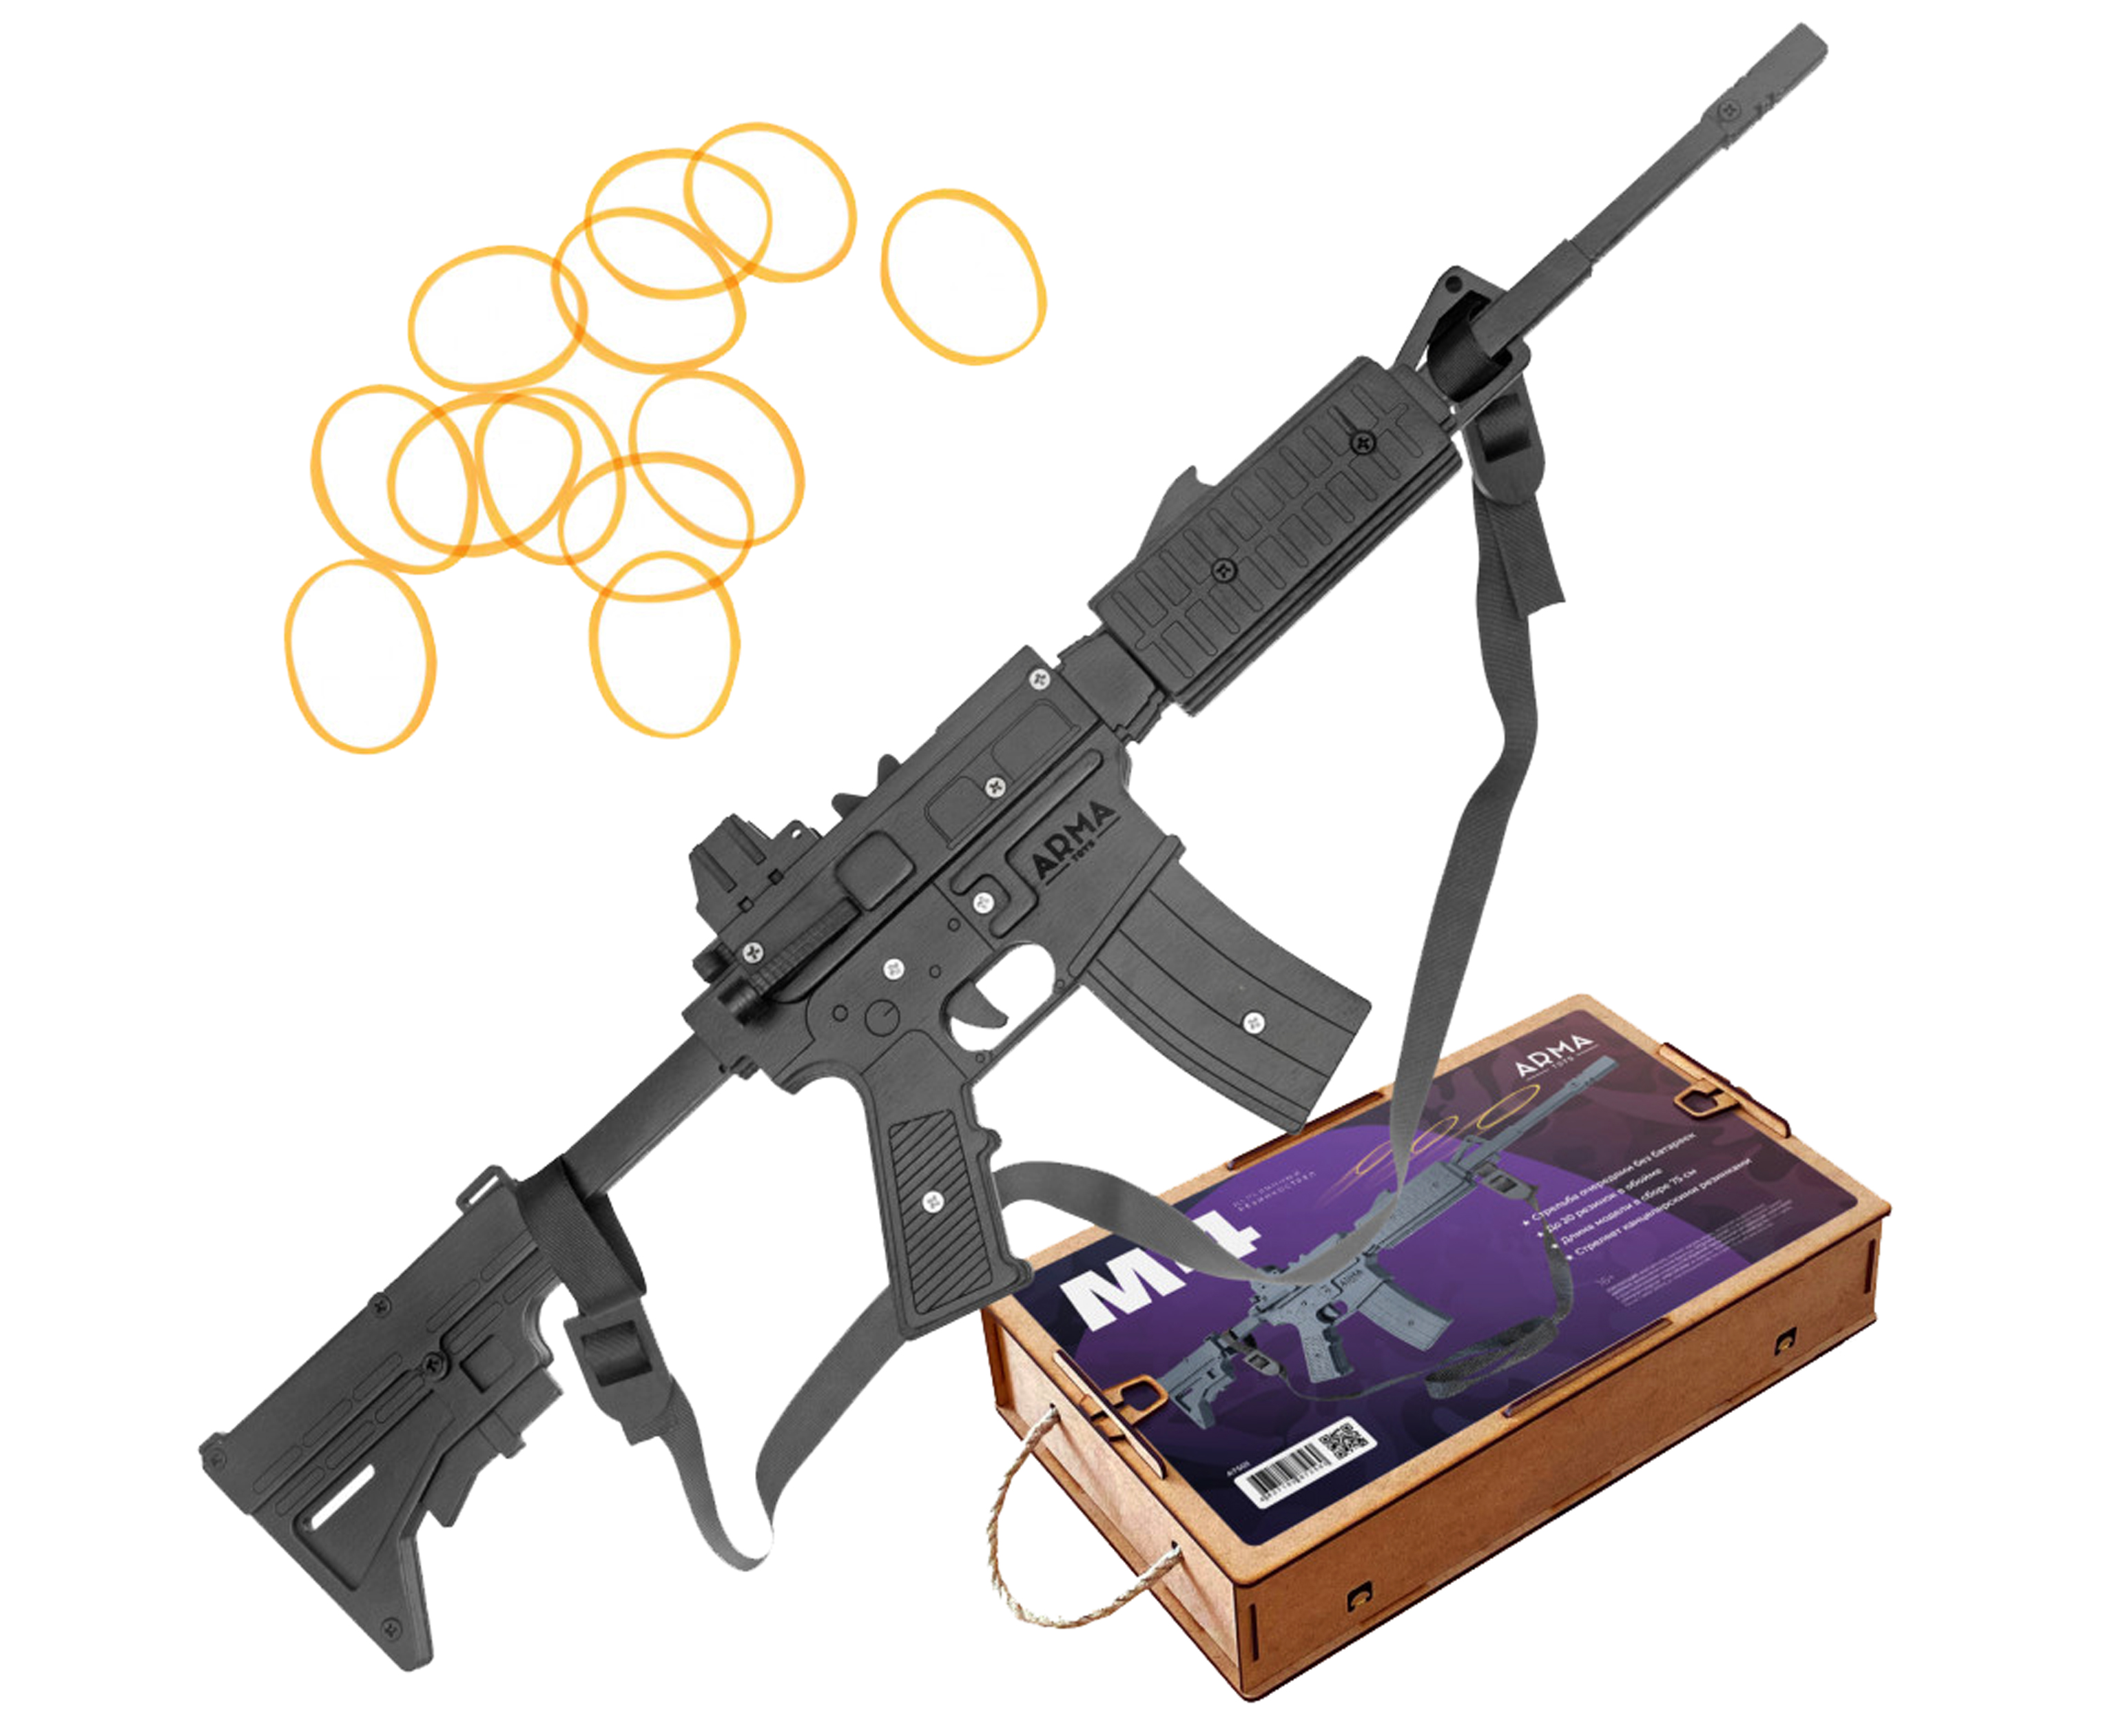 Резинкострел игрушечный Arma toys винтовка M4 макет, AR-15, AT501 резинкострел arma toys автомат ак 12 макет калашников at039